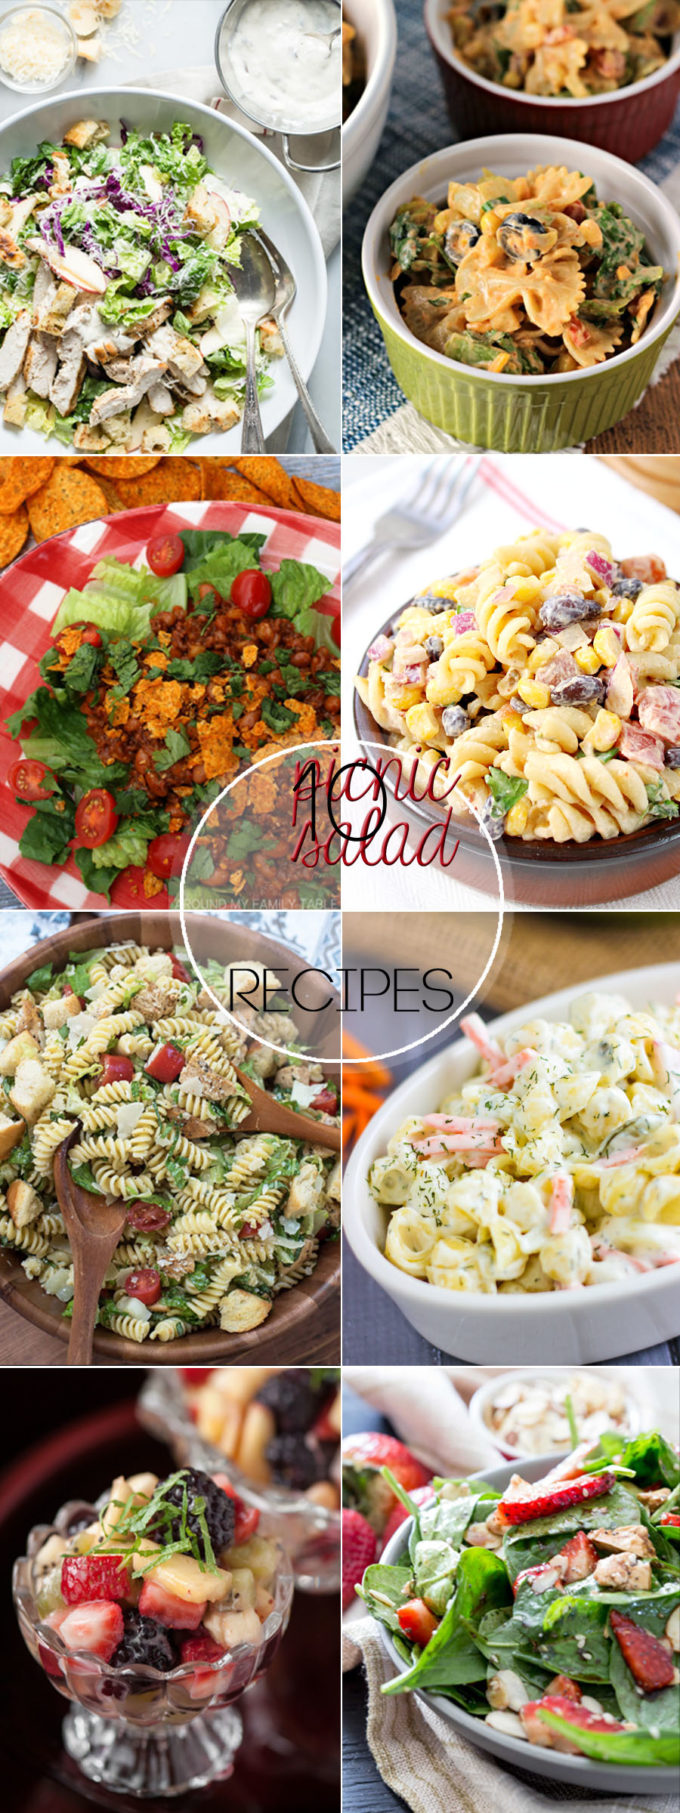 10 picnic salad recipes